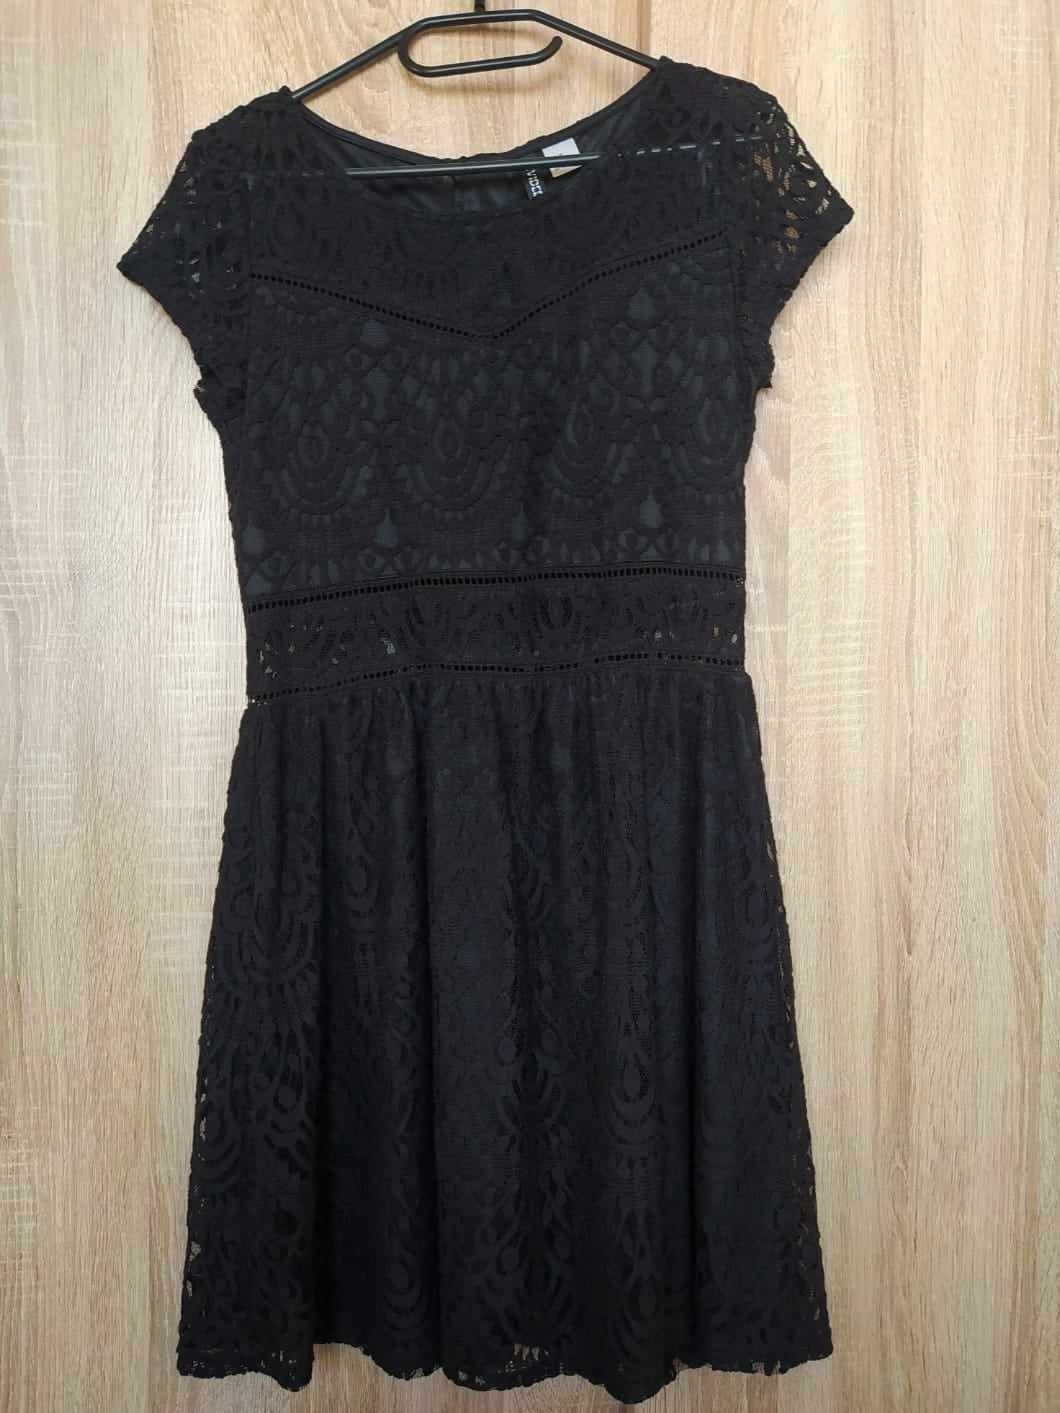 Koronkowa czarna sukienka rozmiar 38